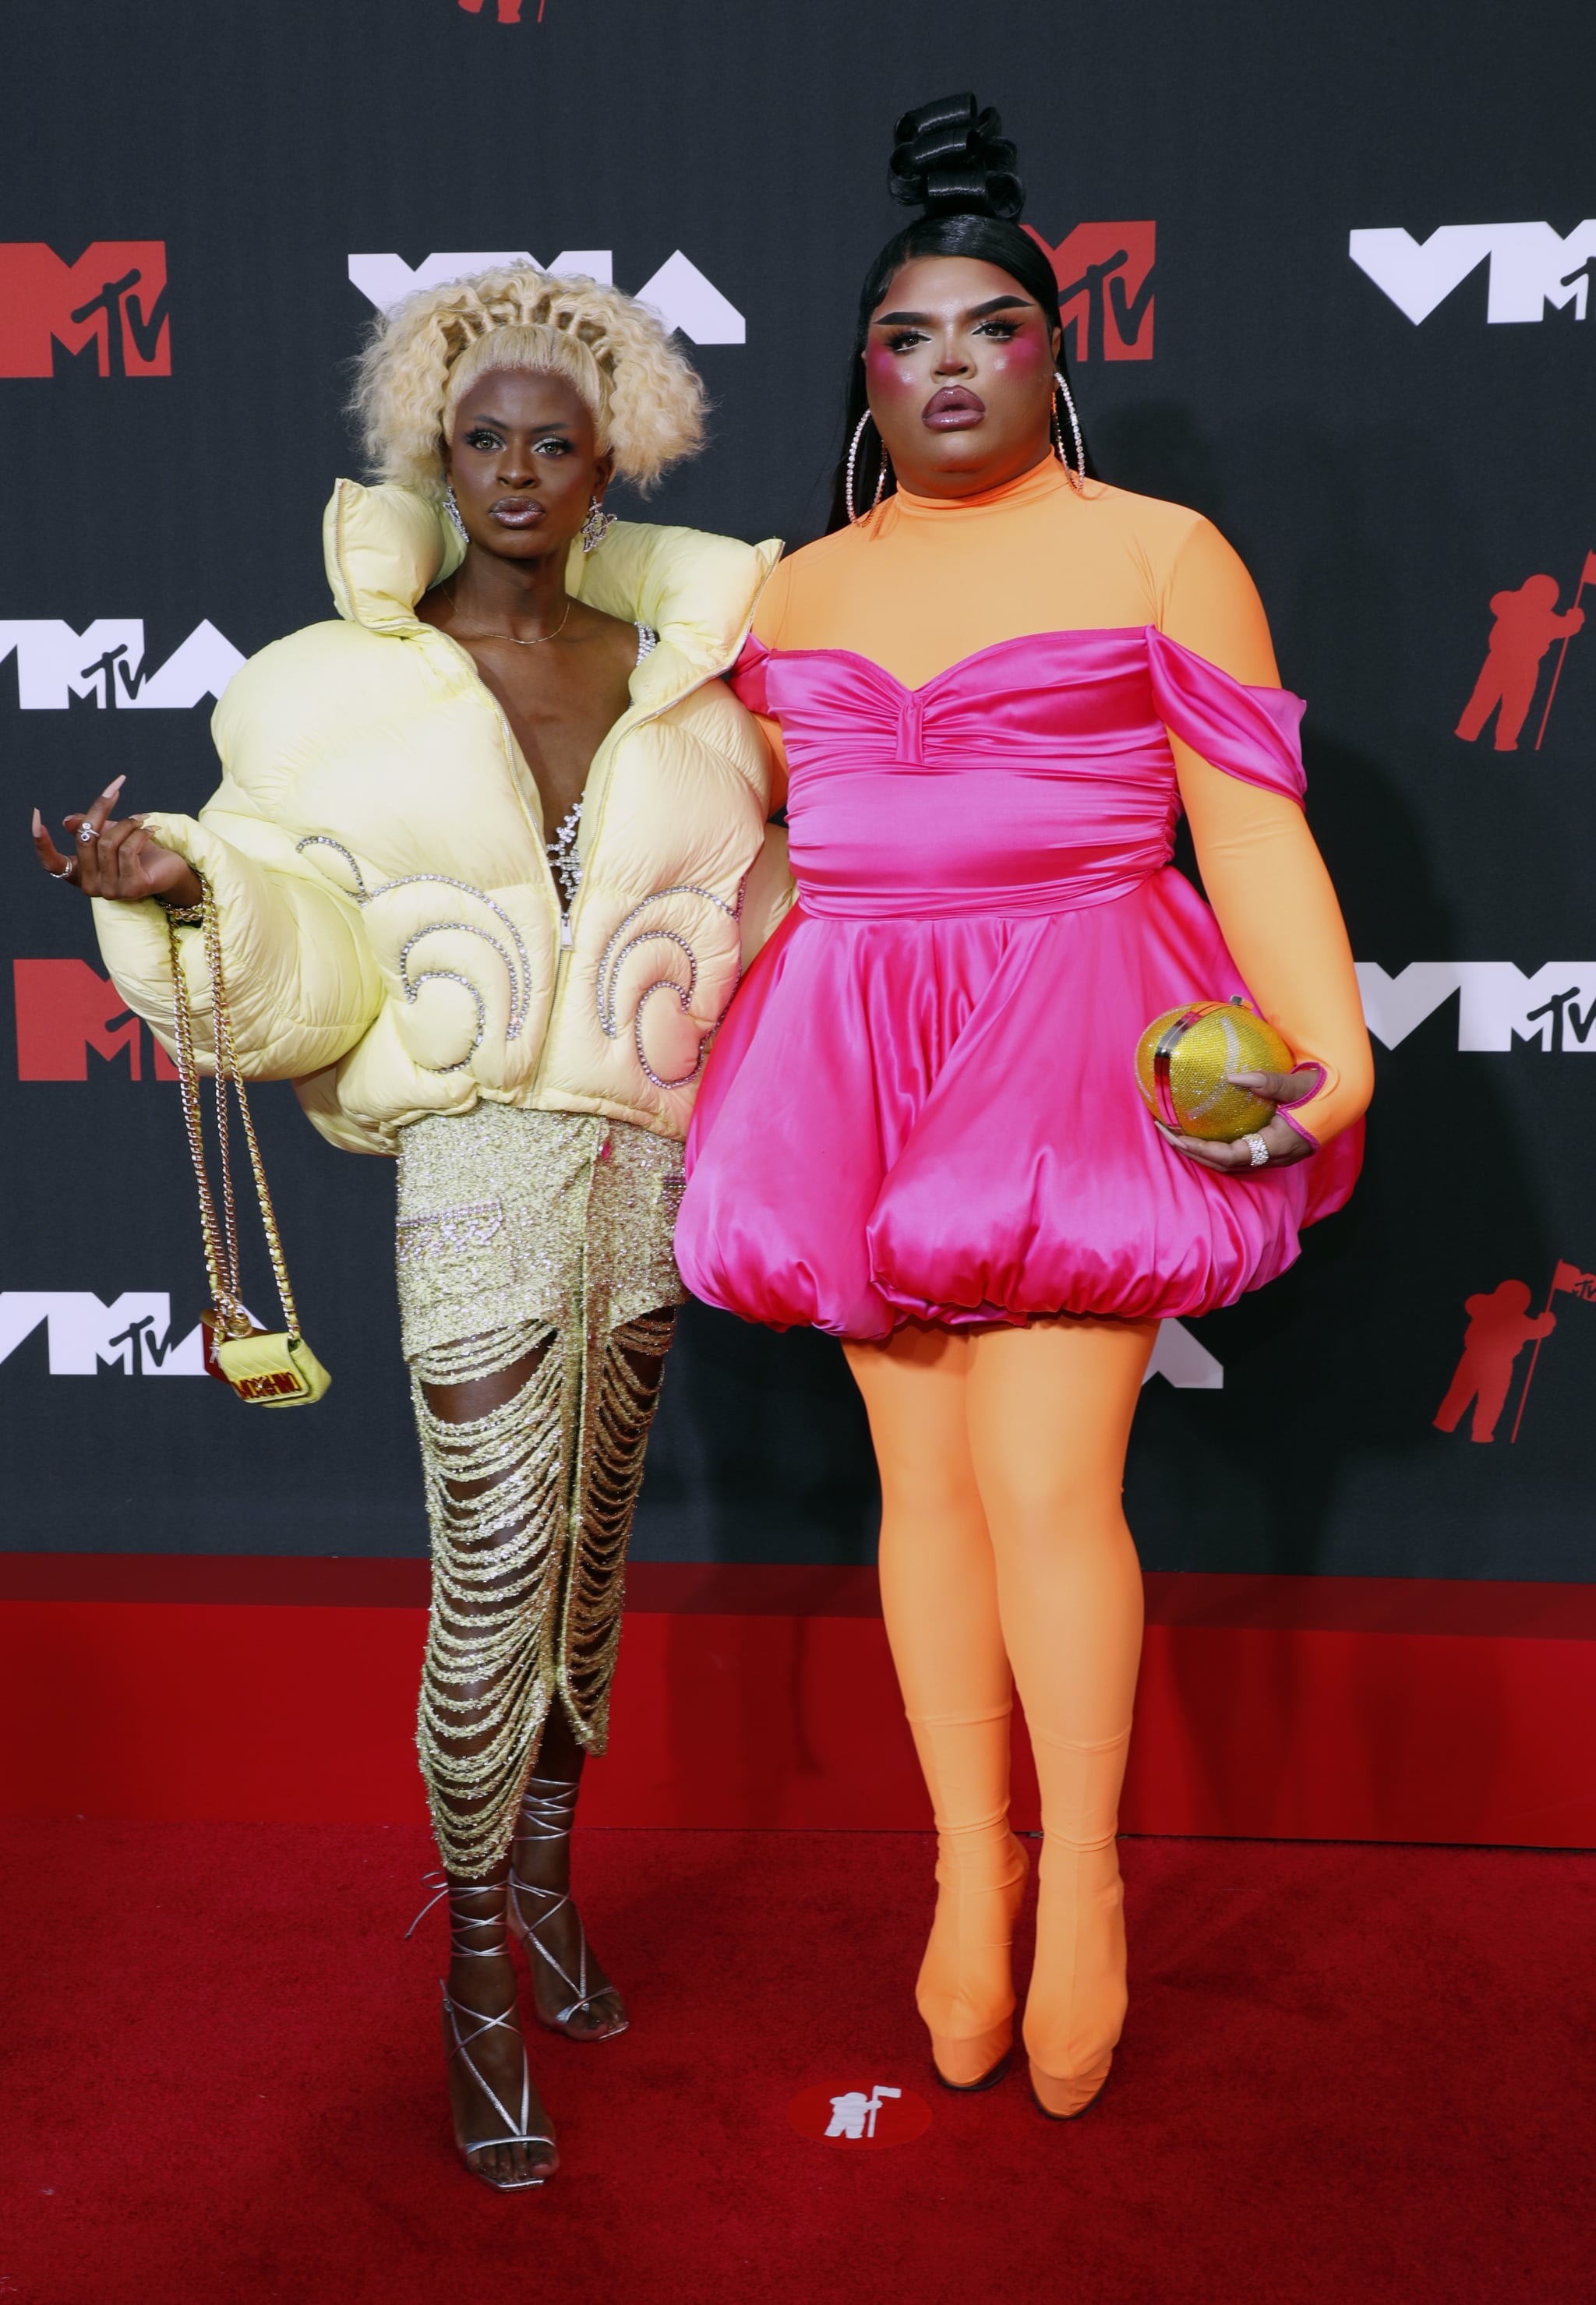 Symone and Kandy Muse at the 2021 MTV VMAs